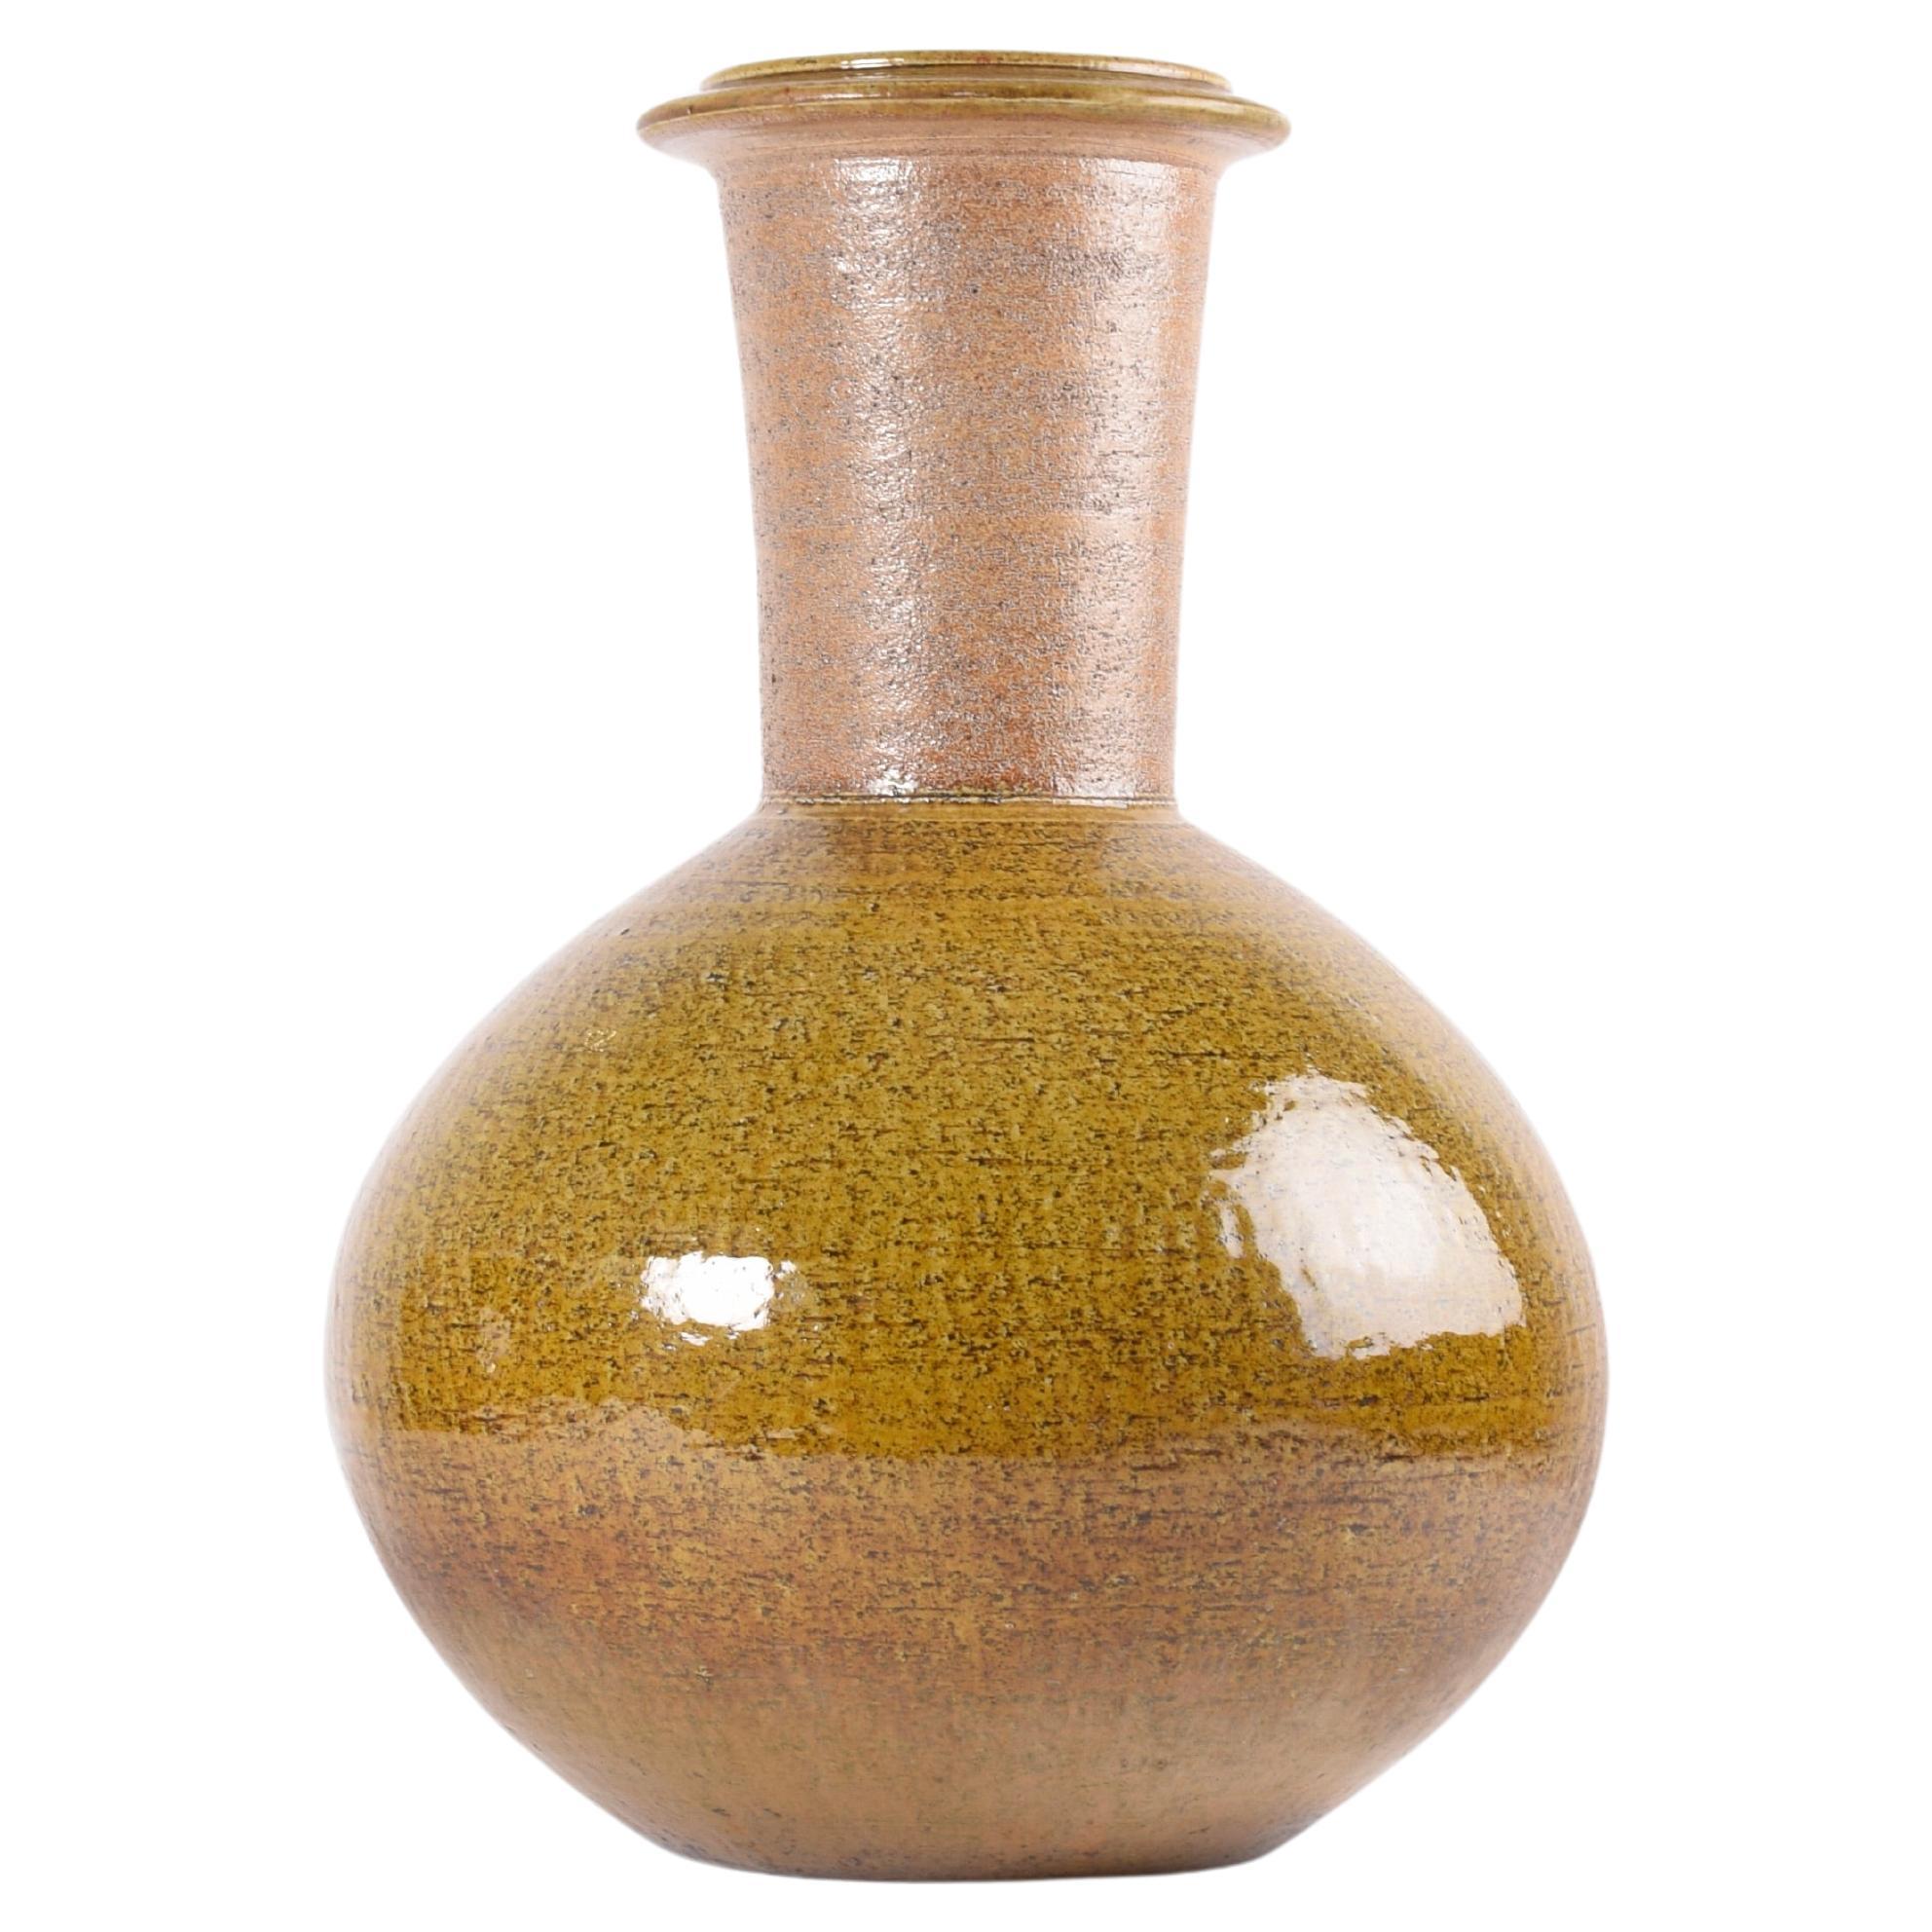 19" Unique Danish Nils Kähler HAK Floor Vase Amber Yellow Glaze, Ceramic 1960s